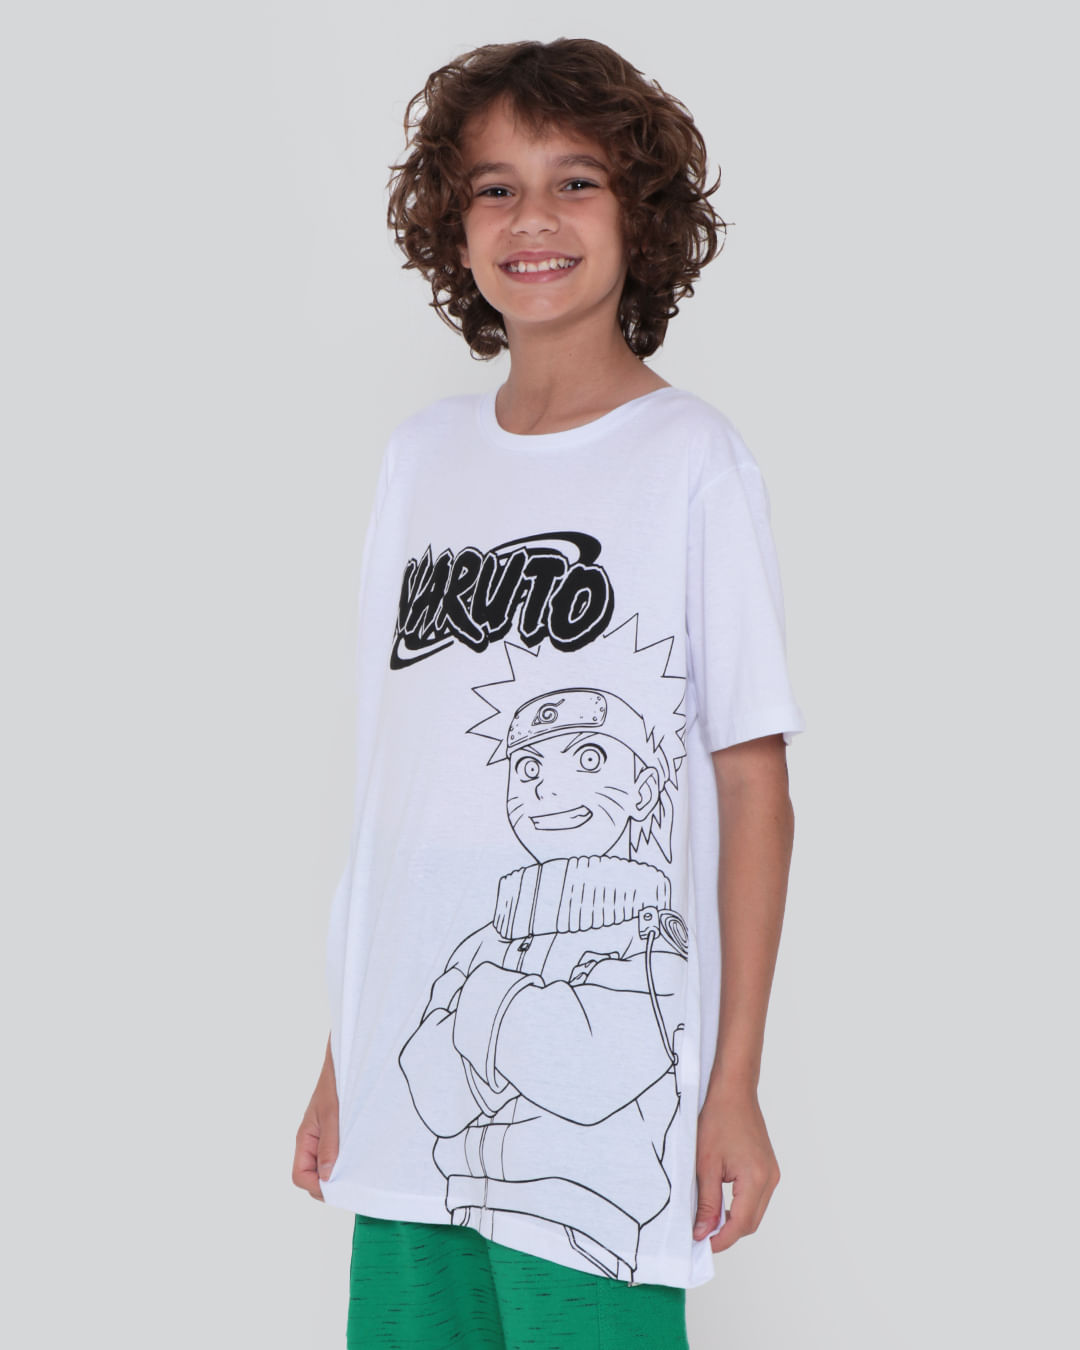 Camiseta-Juvenil-Estampa-Naruto-Preta-Branca